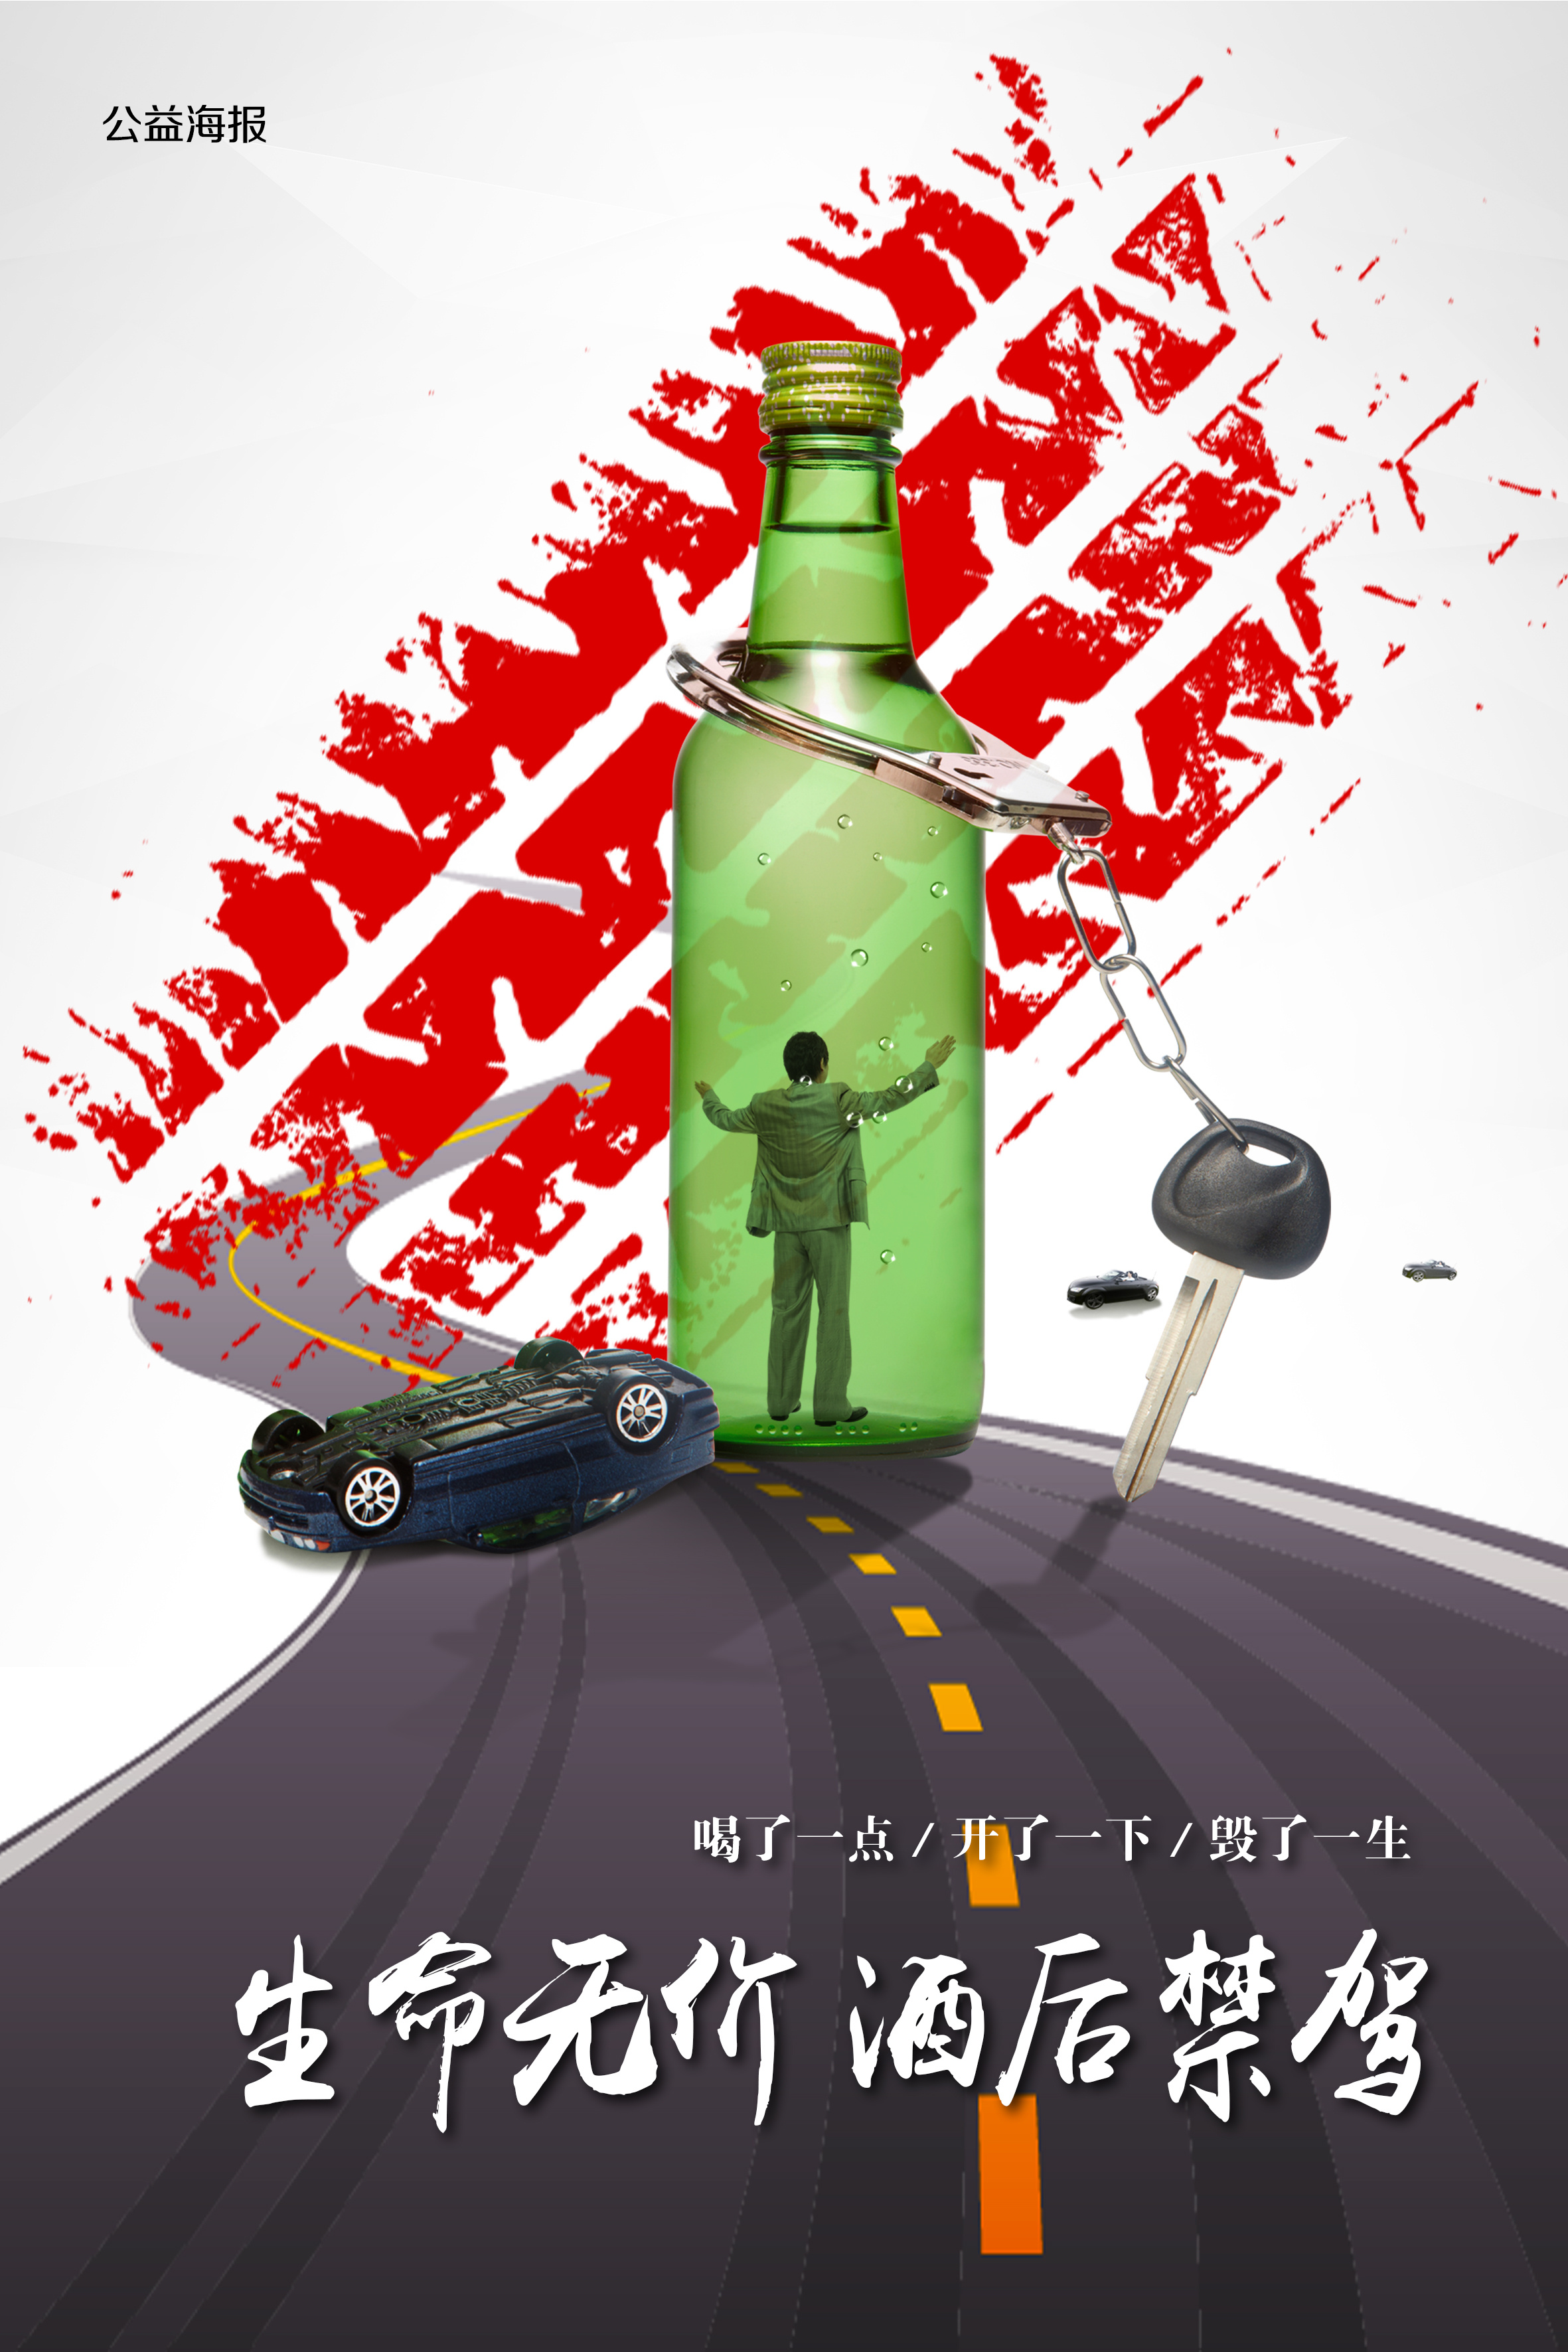 全国拒绝酒驾日交通安全公益宣传手绘手机海报_图片模板素材-稿定设计